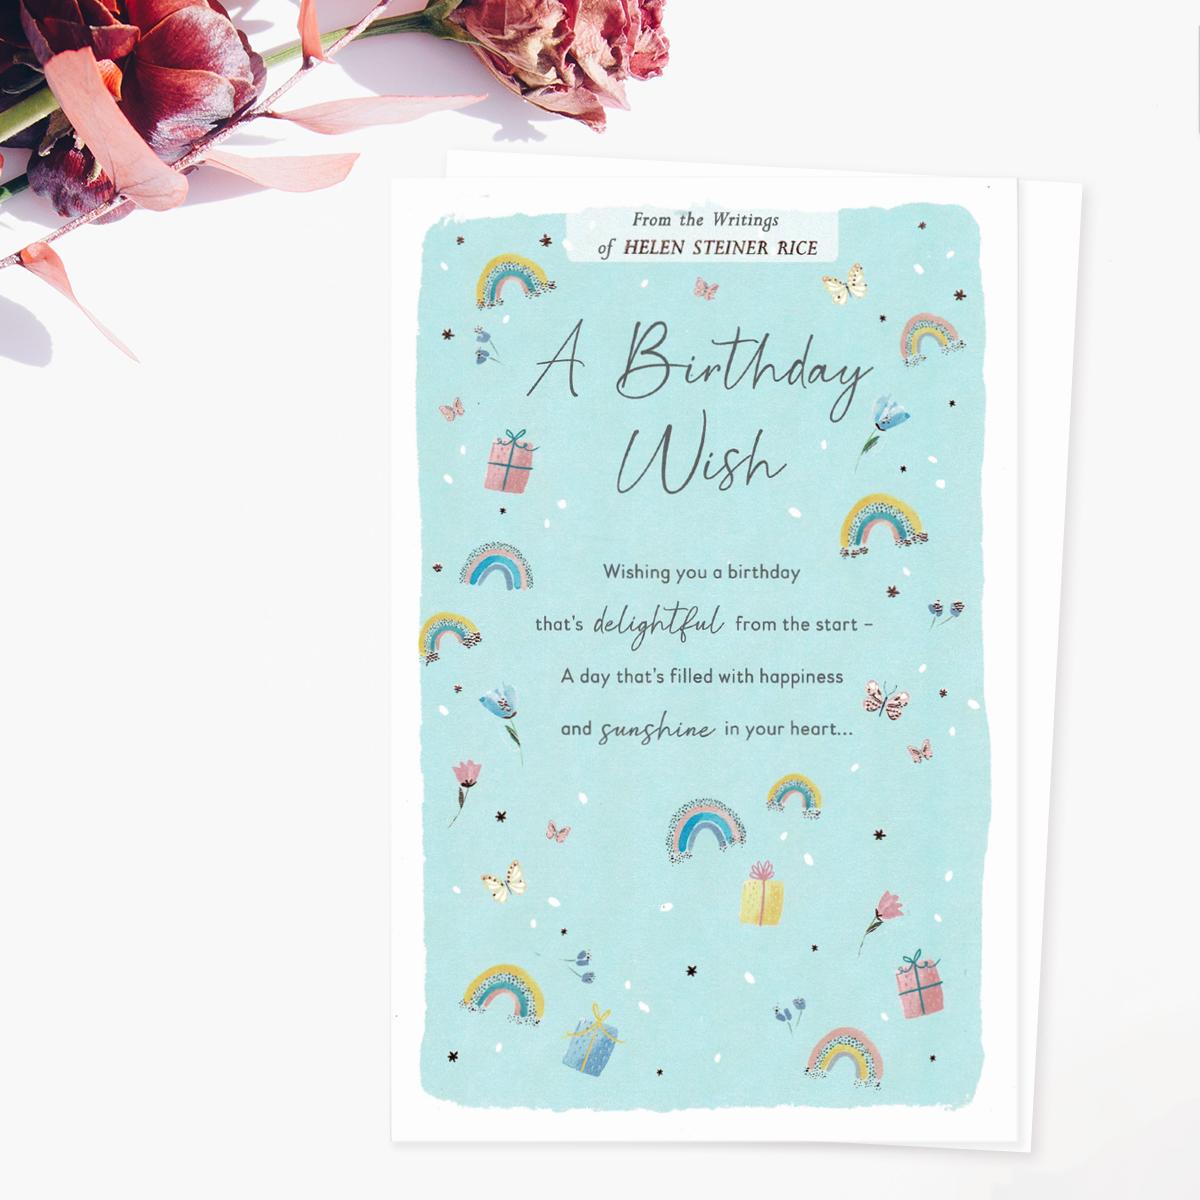 Helen Steiner Rice - A Birthday Wish Card Front Image